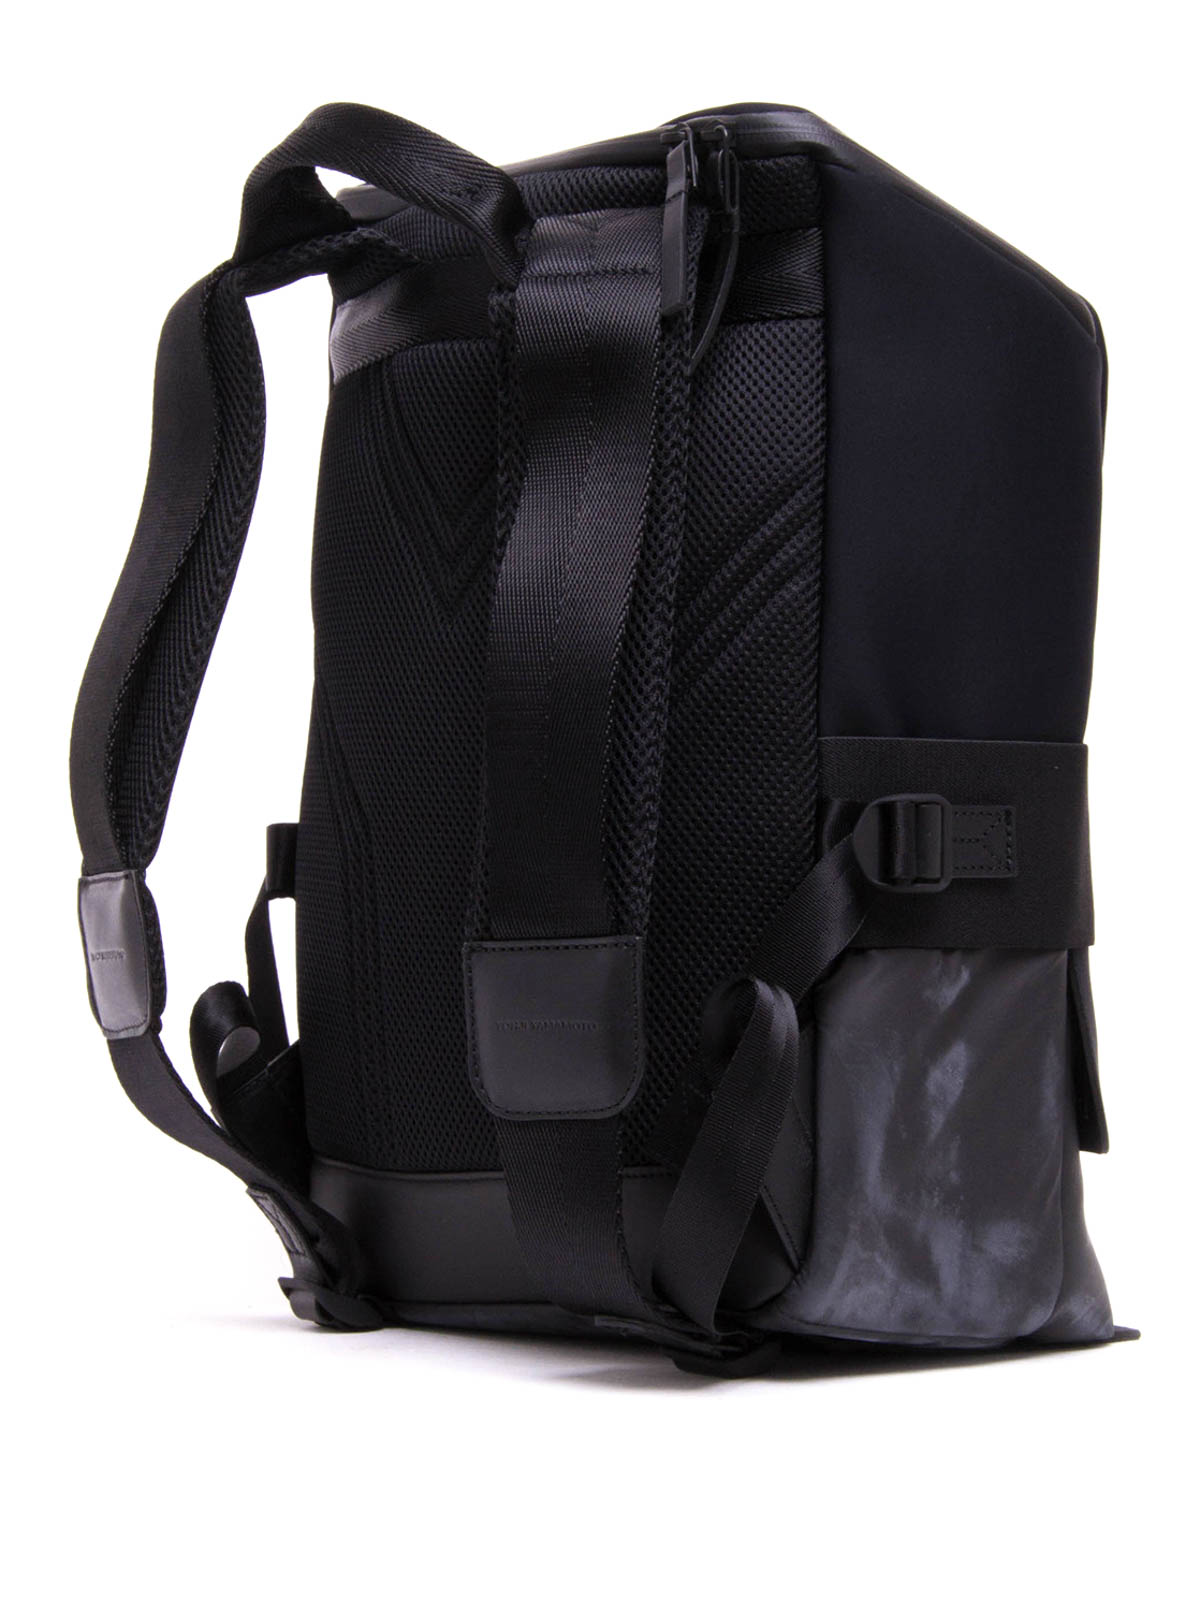 【1回の使用でほぼ未使用】Y-3 QUASA backpack バックパック